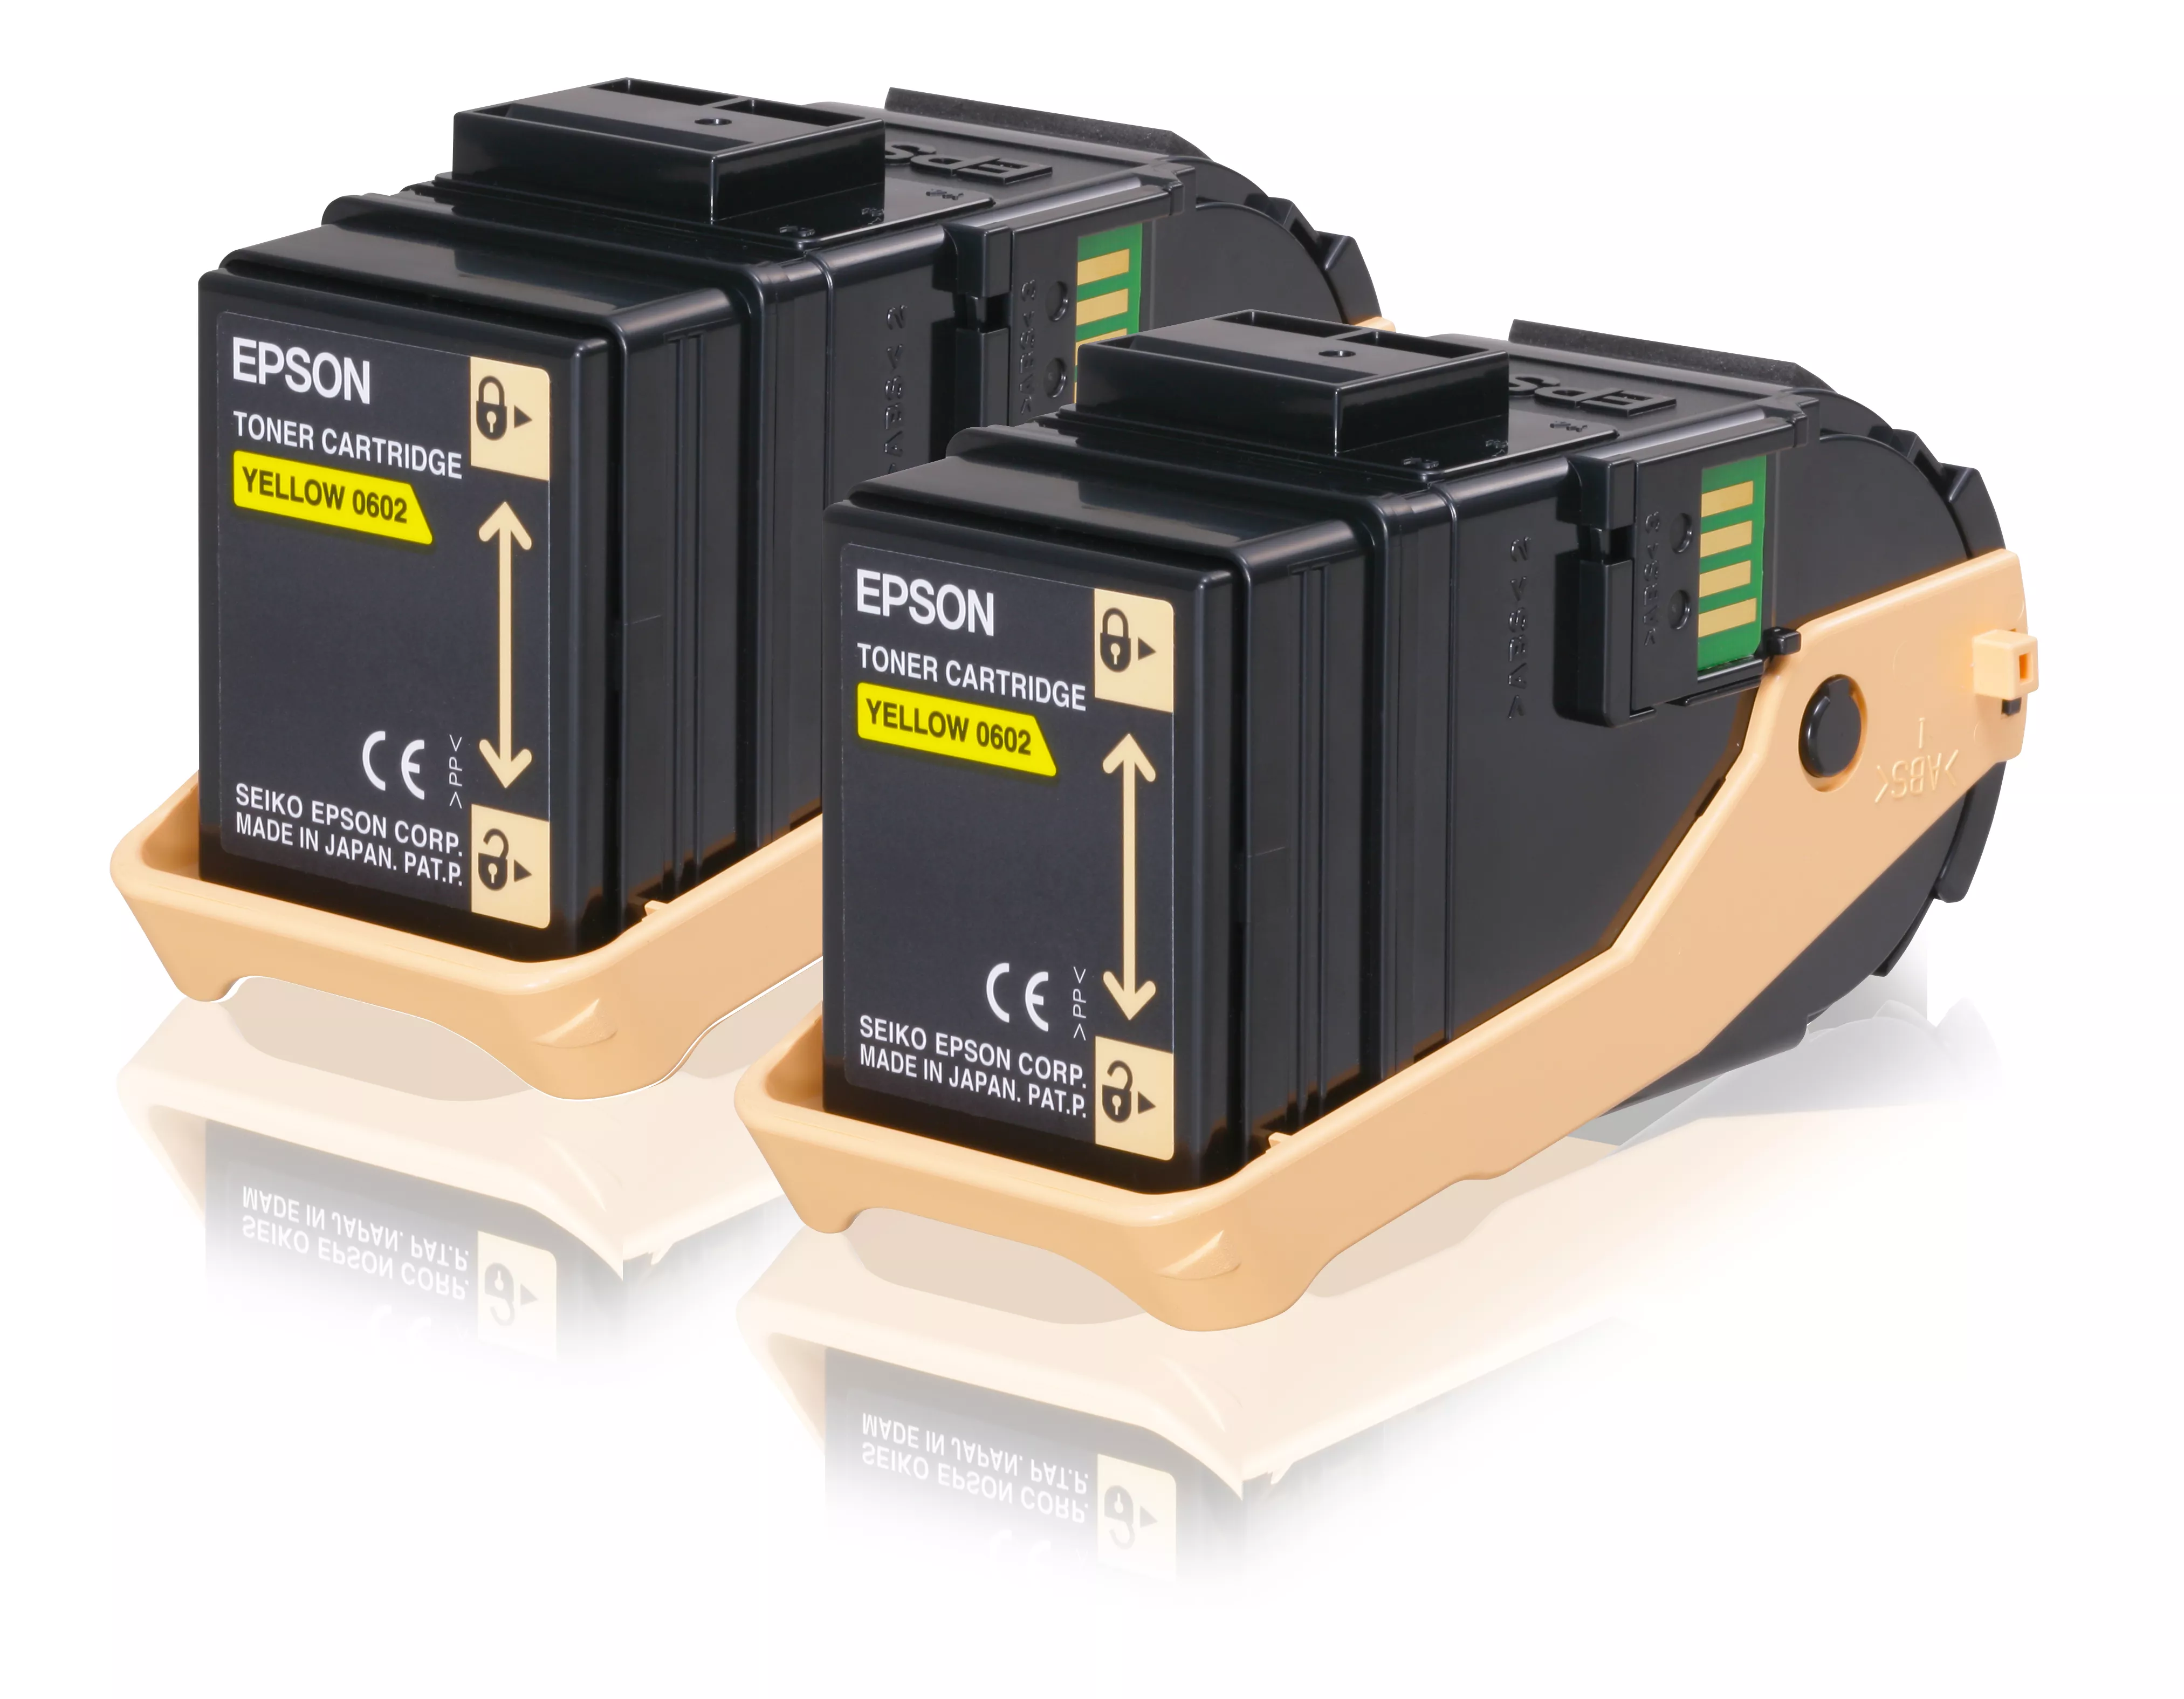 Achat EPSON AL-C9300N cartouche de toner jaune capacité - 8715946481296